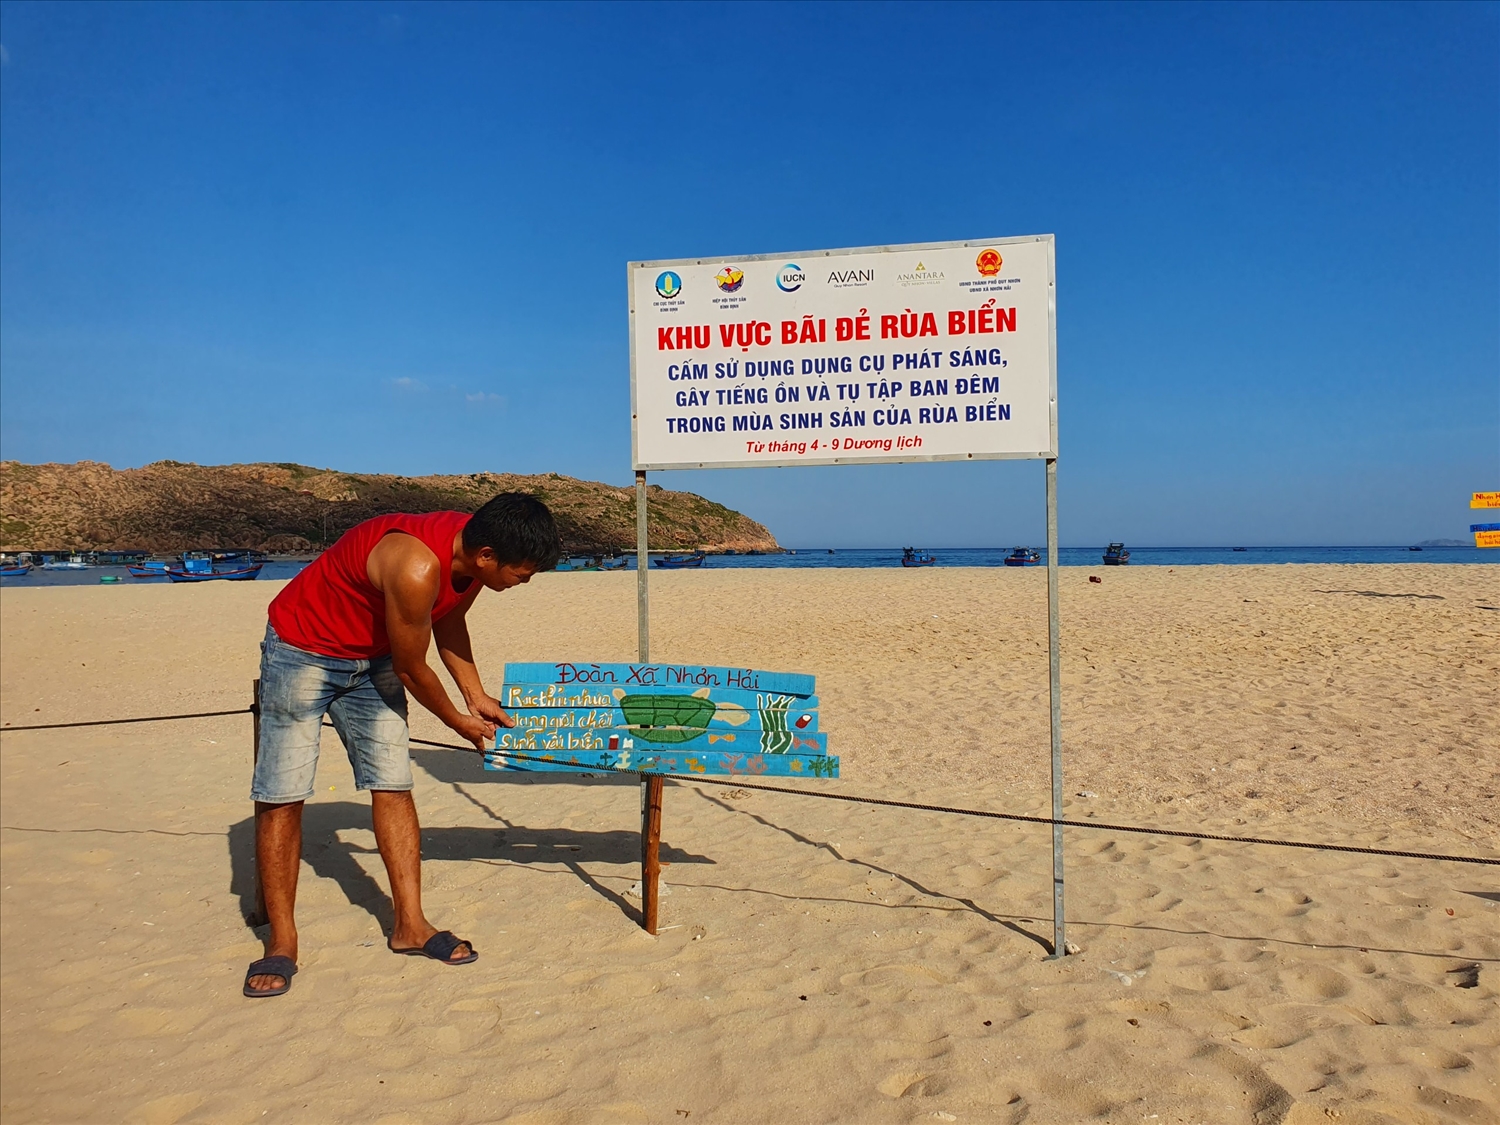 Chính quyền địa phương quy hoạch khu bãi đẻ tạm cho rùa biển sinh sản